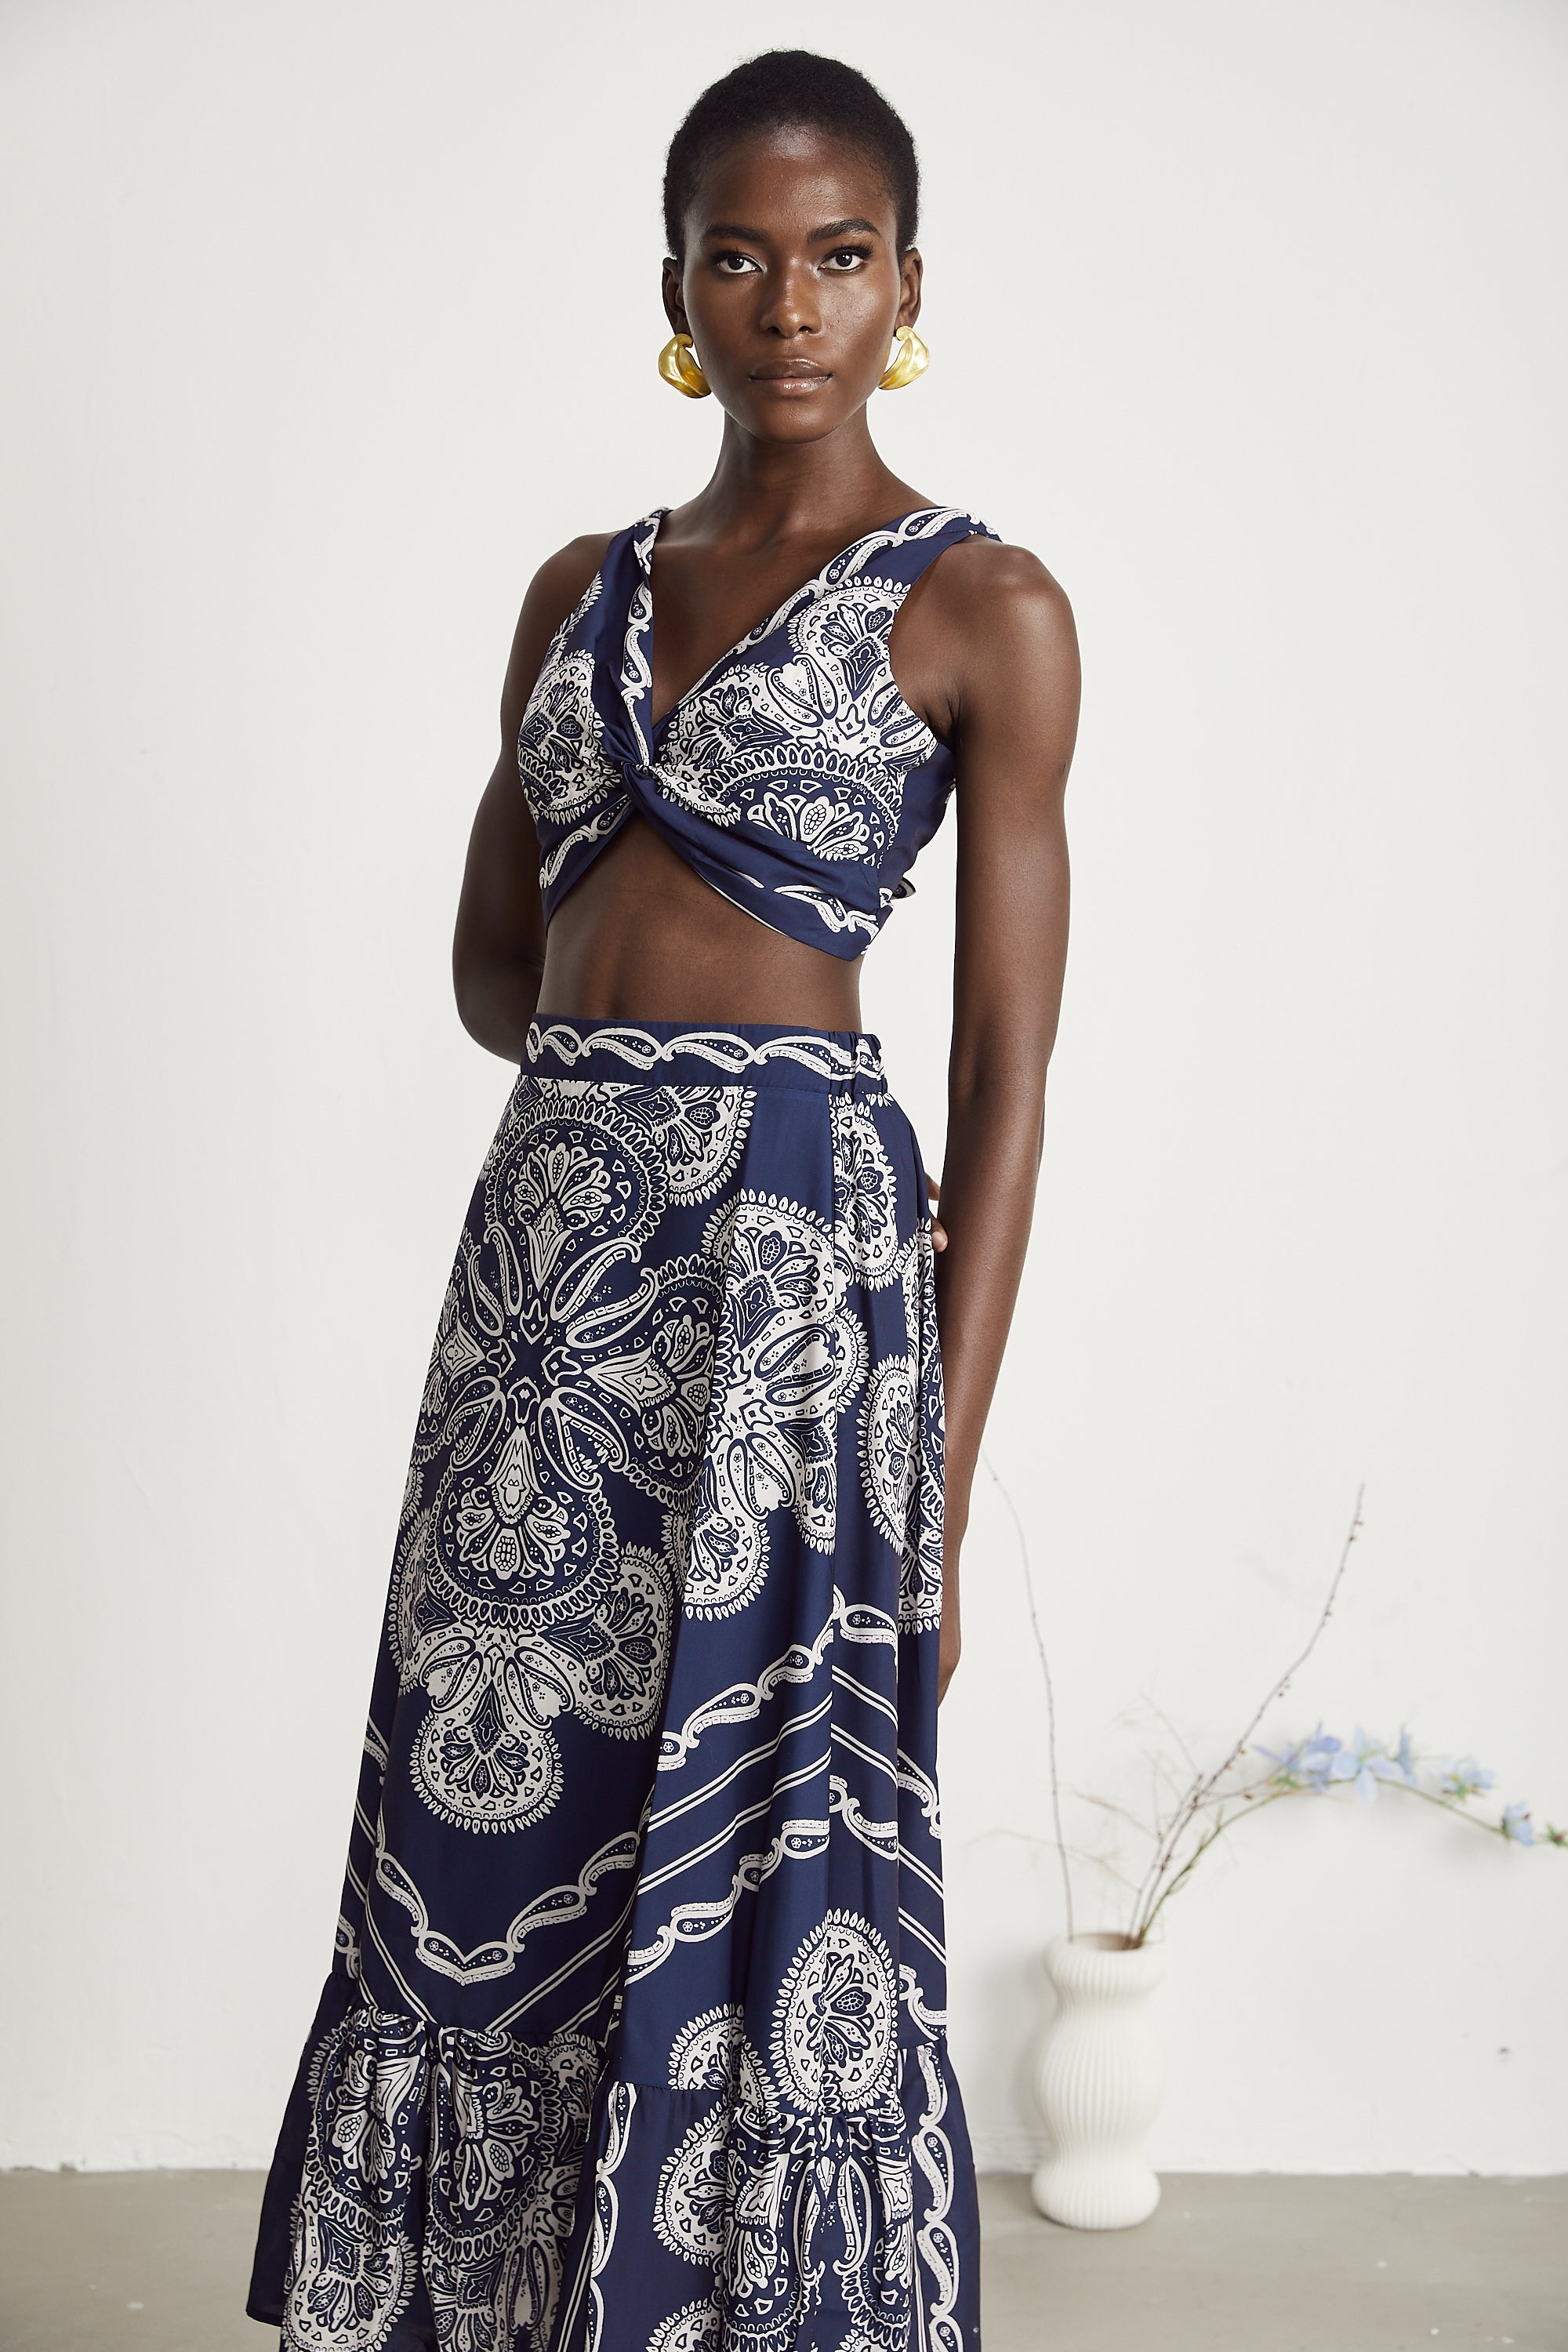 Ingrid paisley-print top & skirt matching set